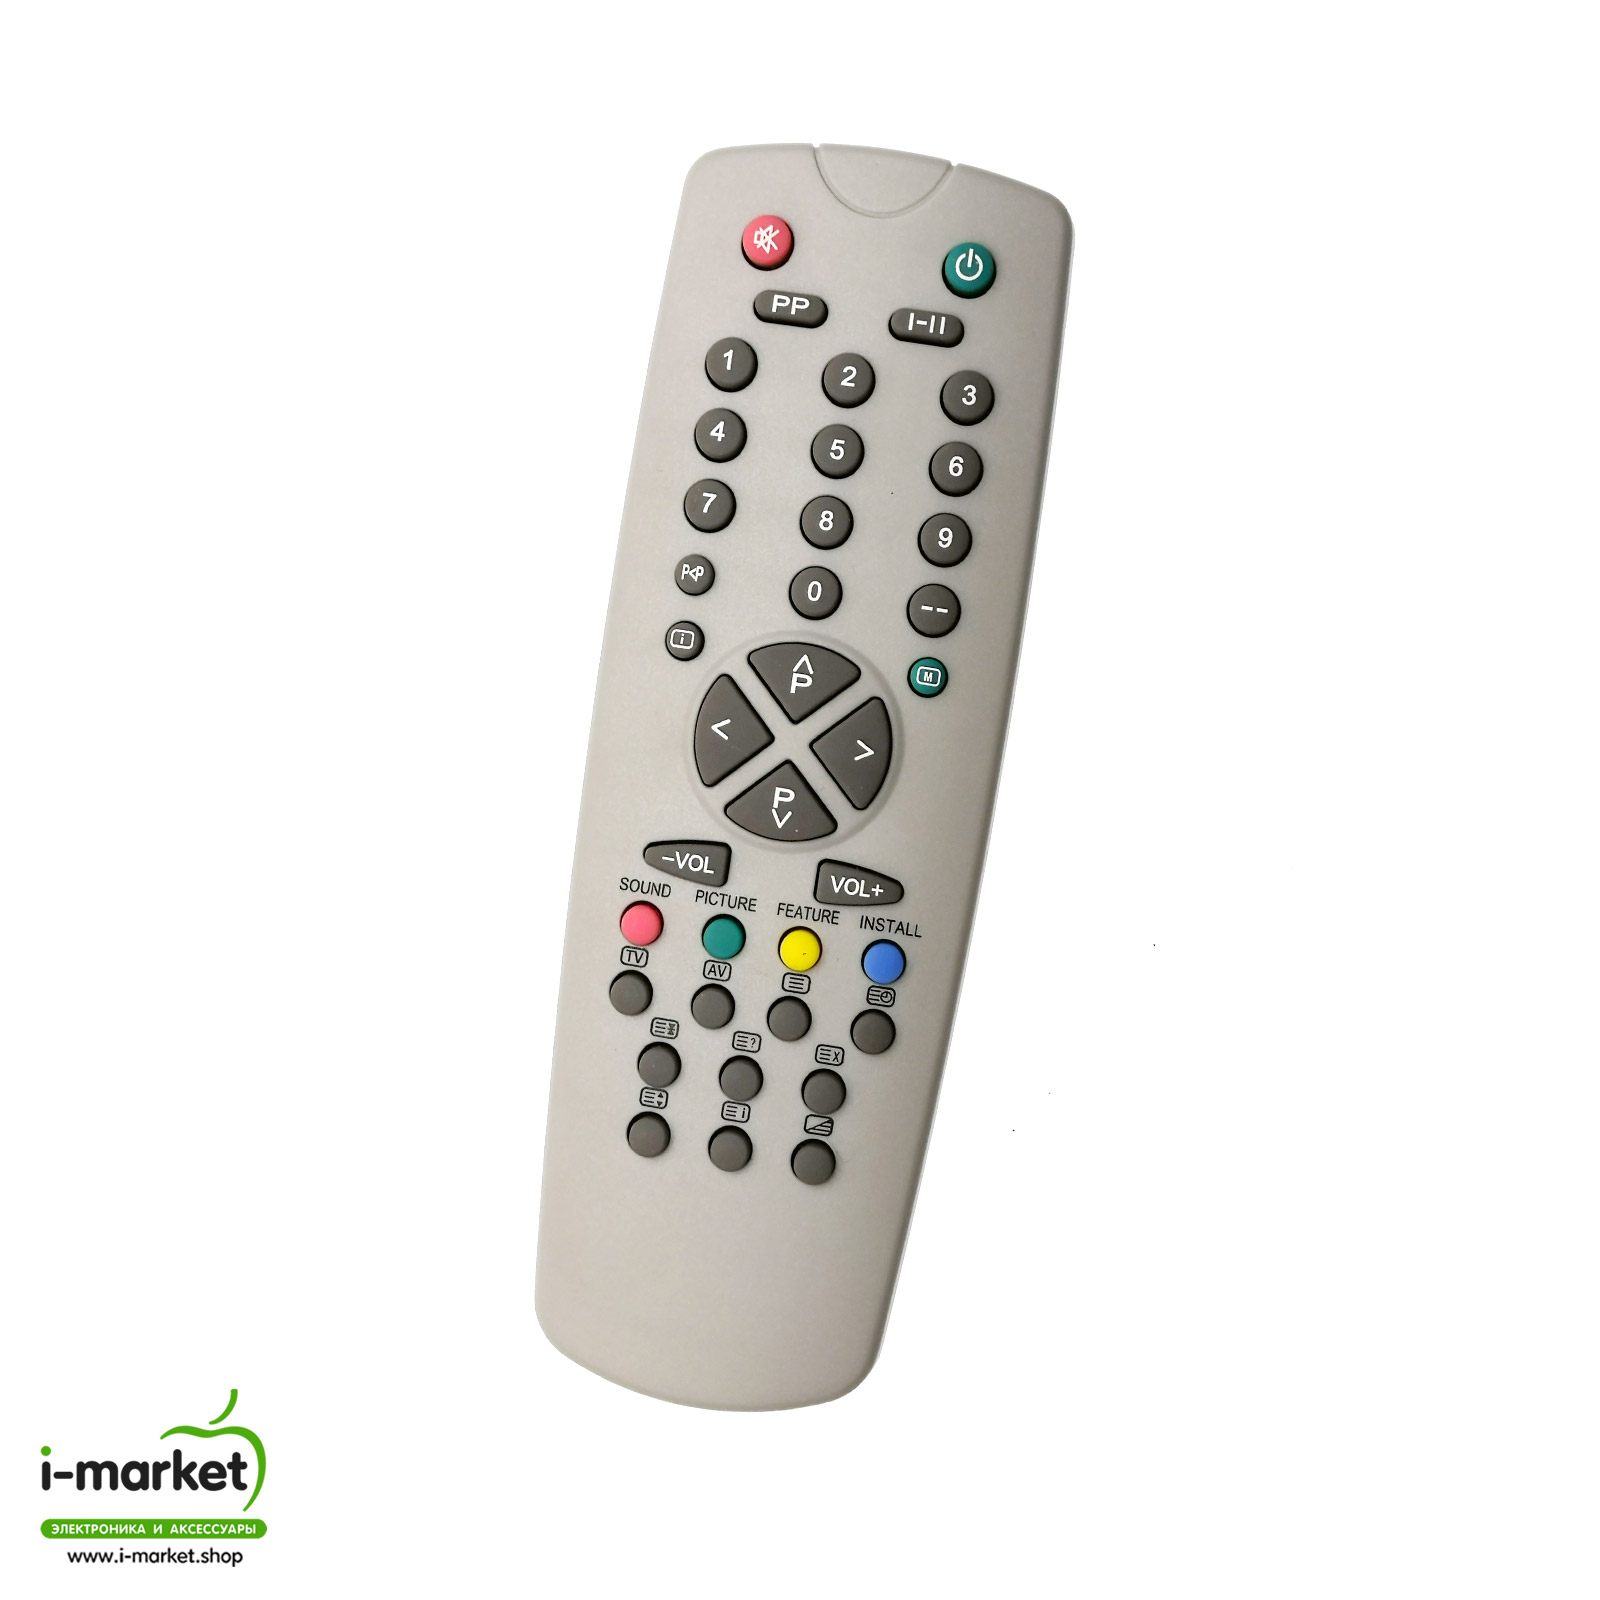 Пульт ДУ для FUNAI 2000 MK7 подходит к следующим моделям: TV-1400MK7, TV-2000AMK8, TV-2000MK7, TV-2100MK10, TV-2100MK7, TV-2100MK8, TV-2500AMK8, TV-2500TMK8.